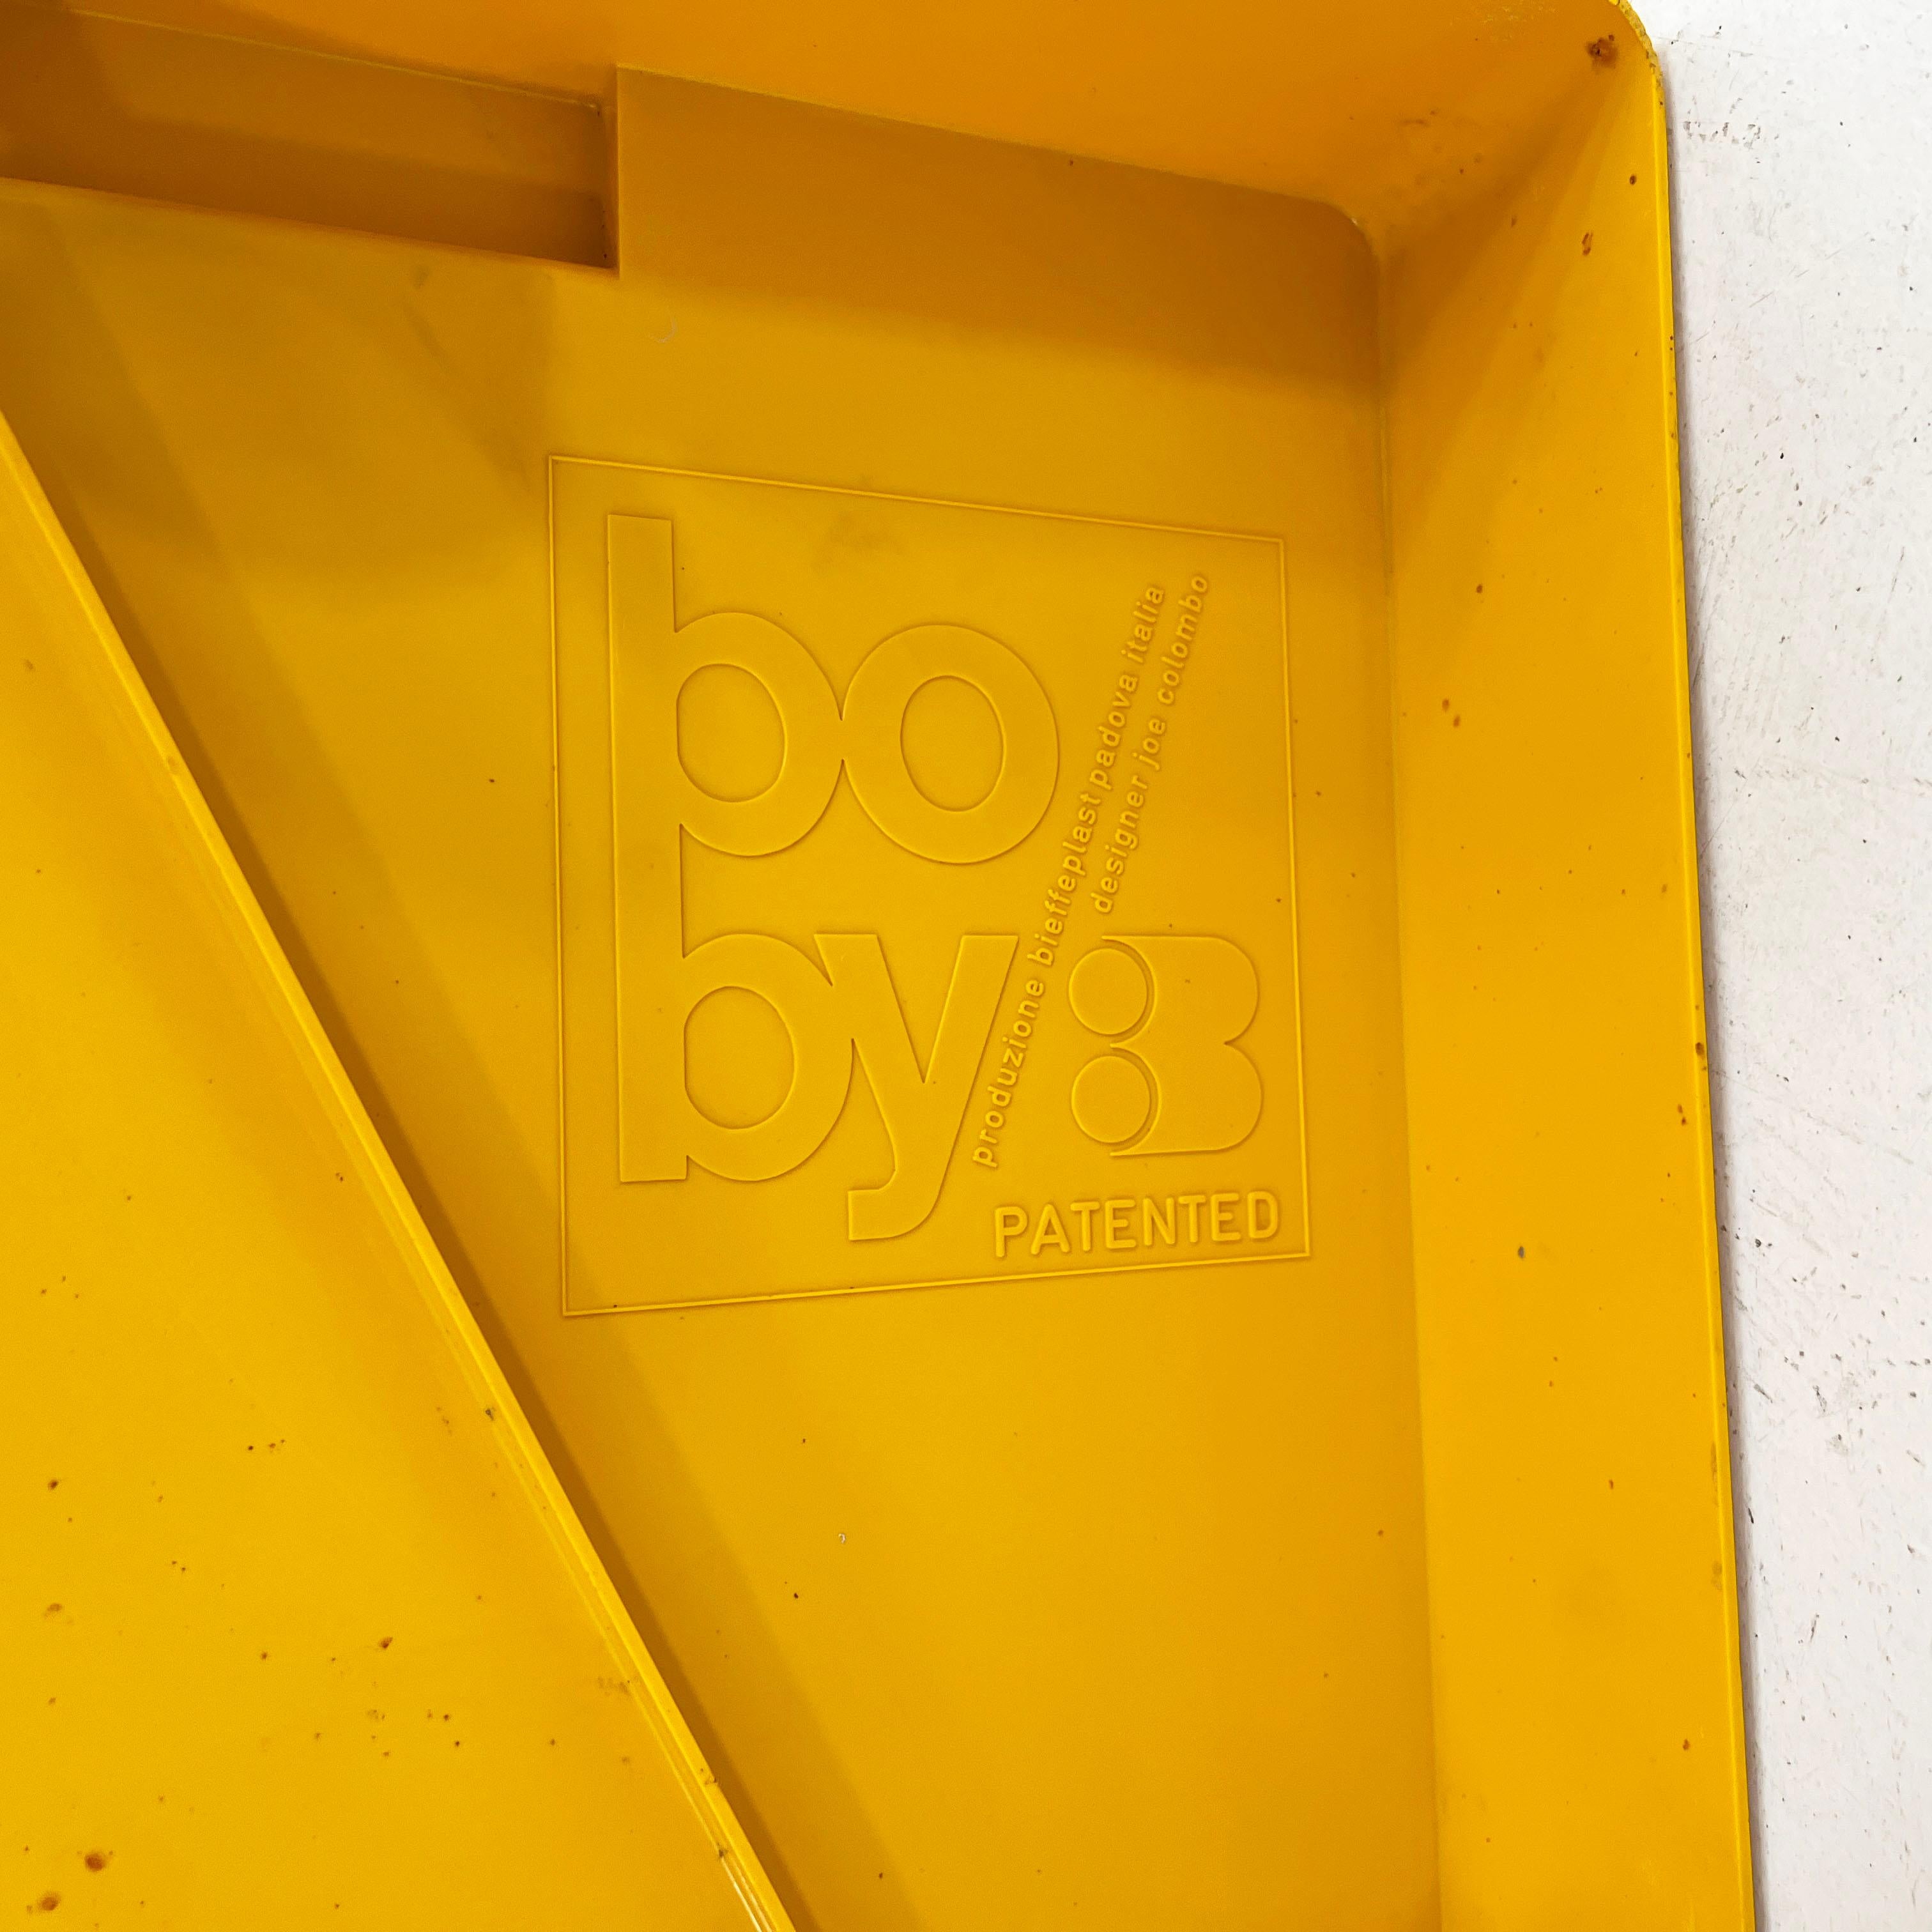 Plastic Yellow Boby Trolley by Joe Colombo for Bieffeplast, 1960s